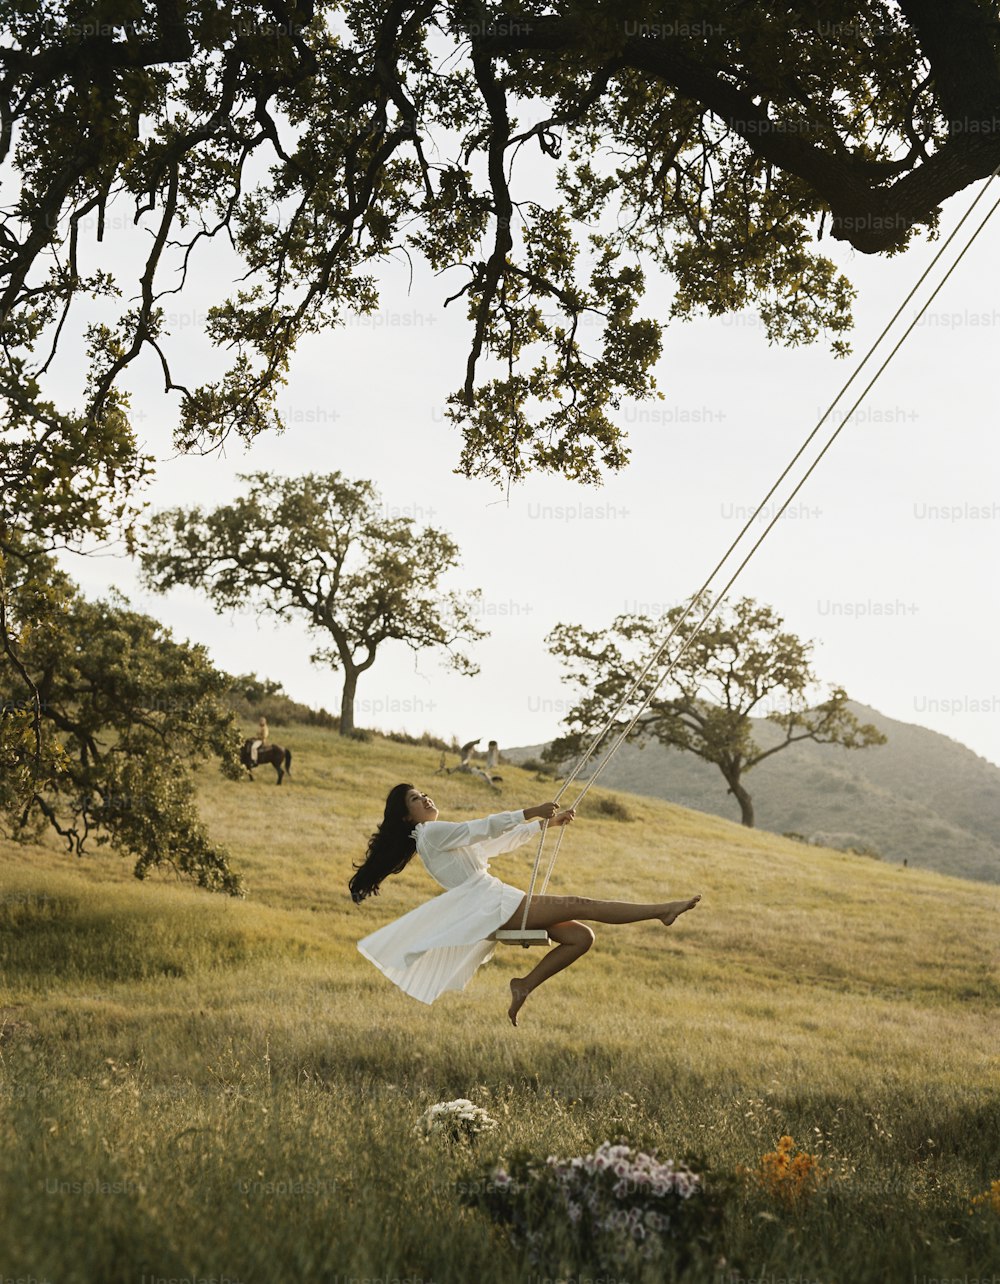 Una mujer volando por el aire mientras llevaba un vestido blanco